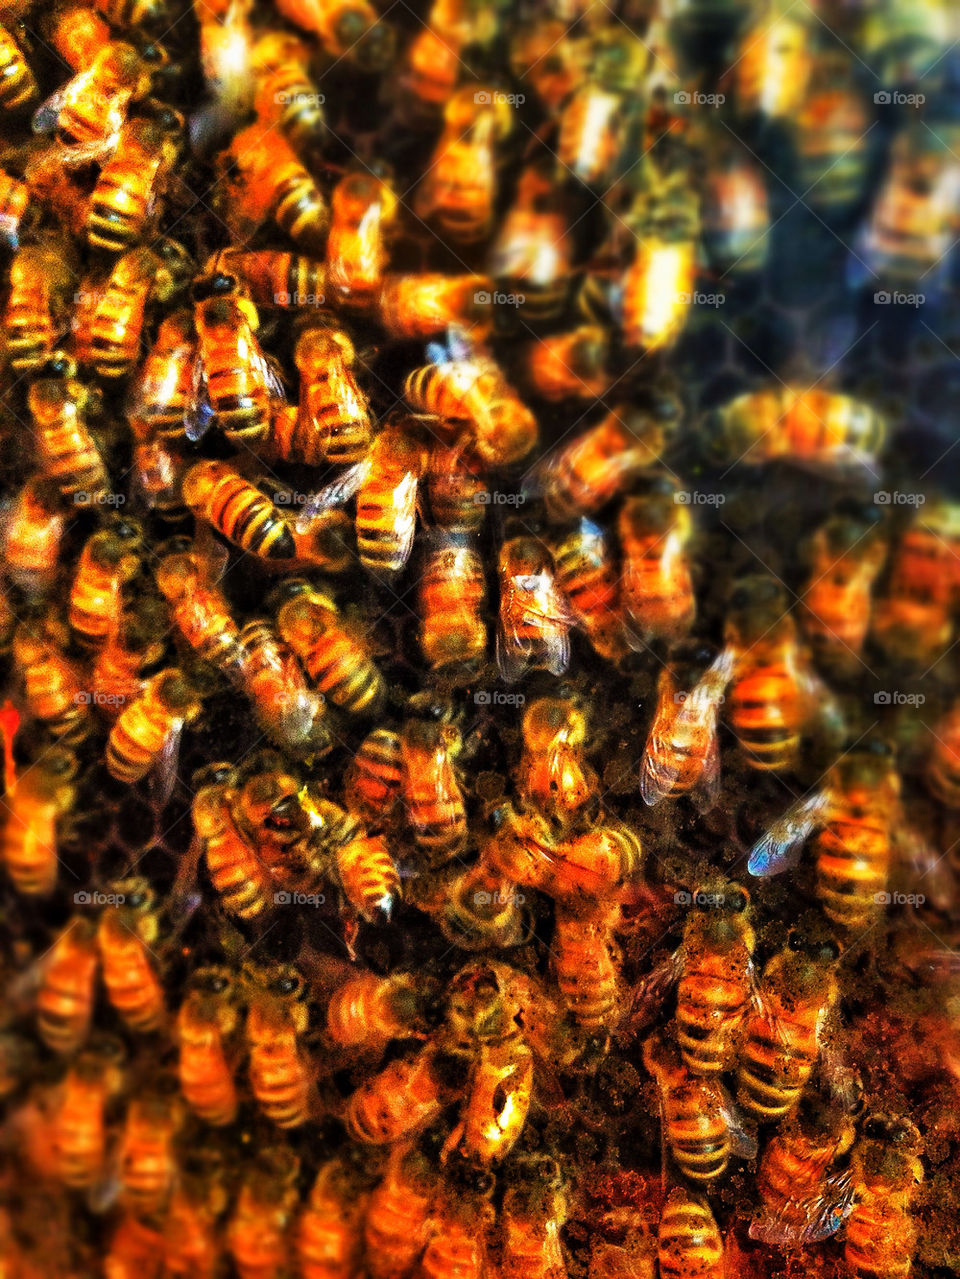 Honeybees in a beehive